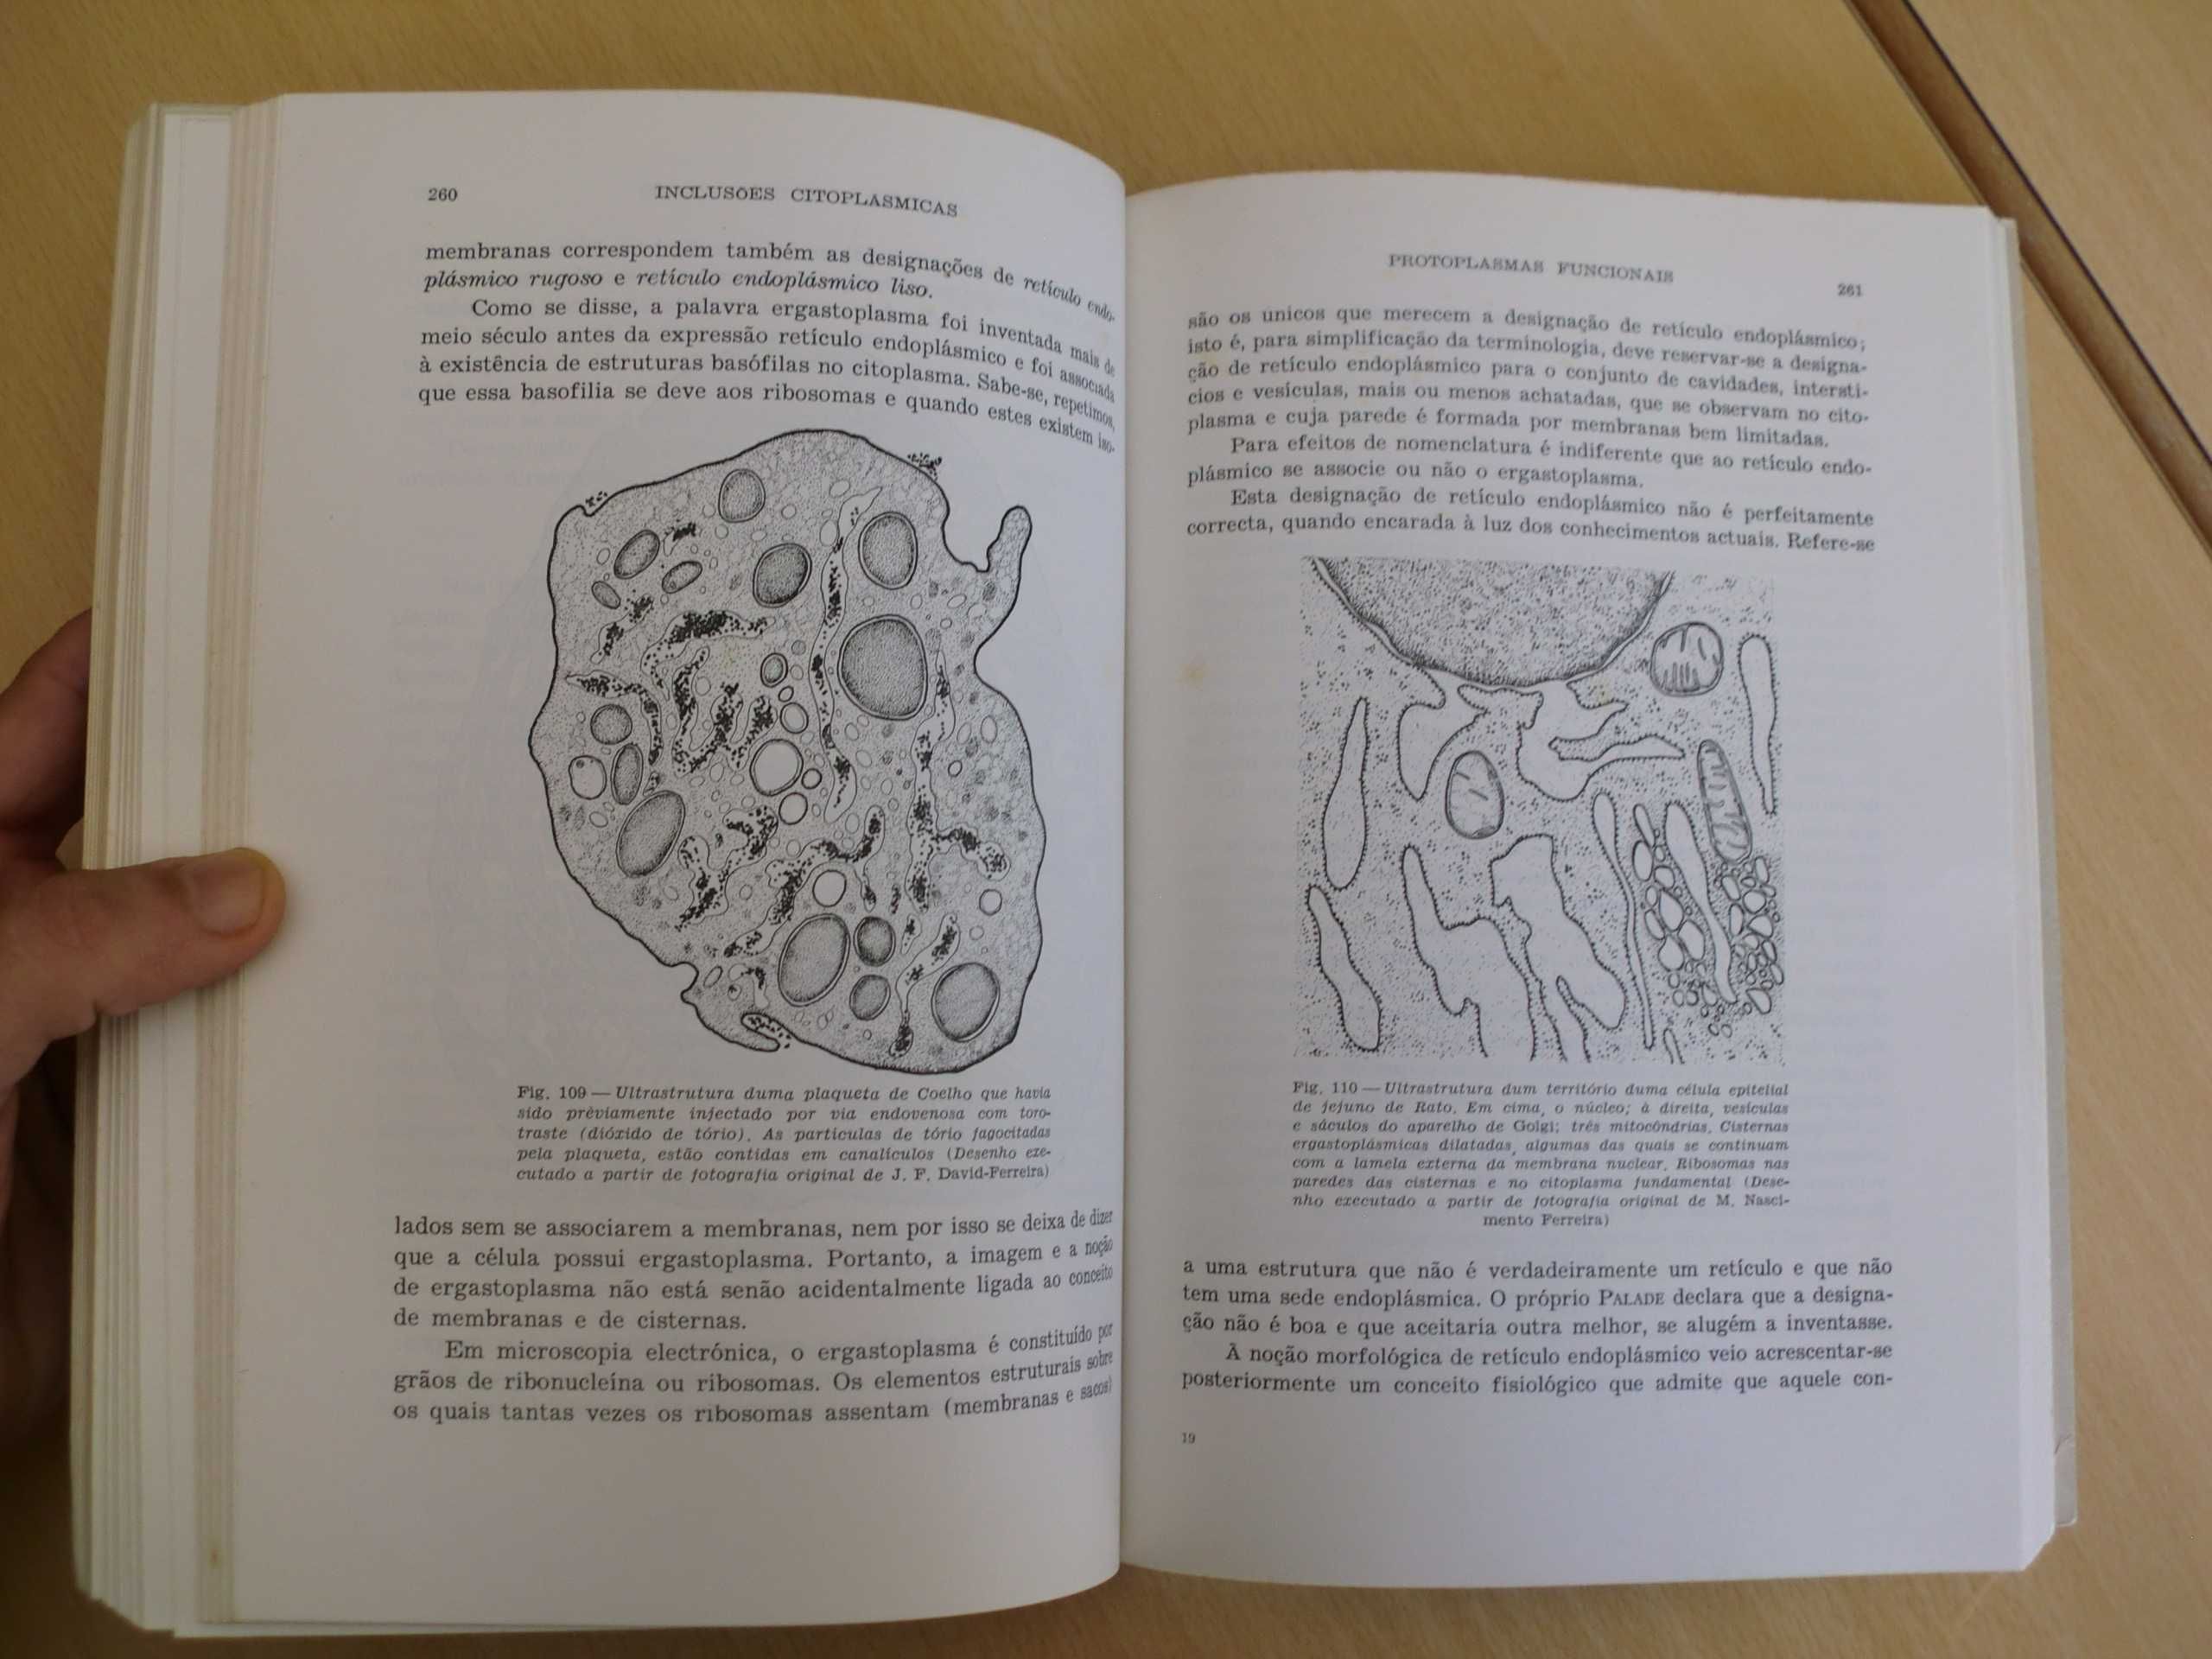 Célula, Lições de Biologia Médica, I Parte.
de M. J. Xavier Morato